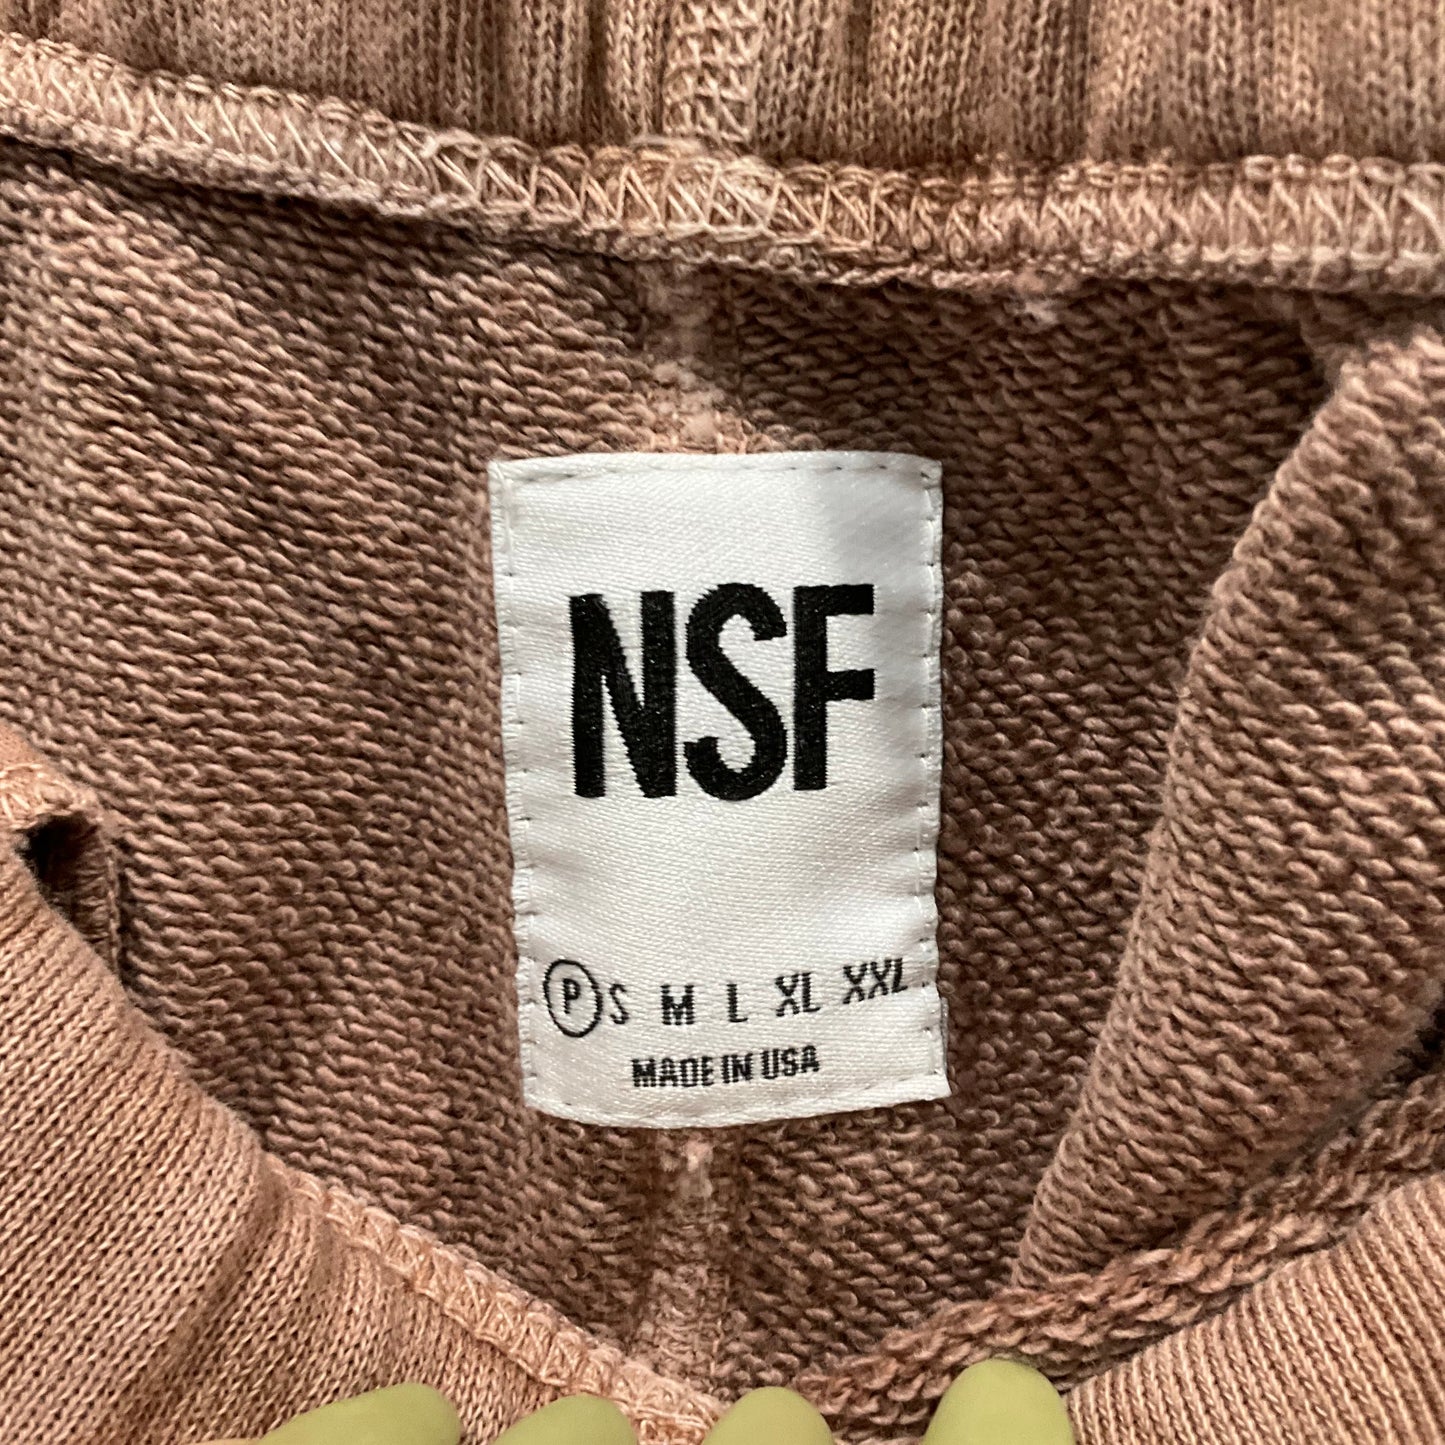 Pants Sweatpants By NSF  Size: Xs